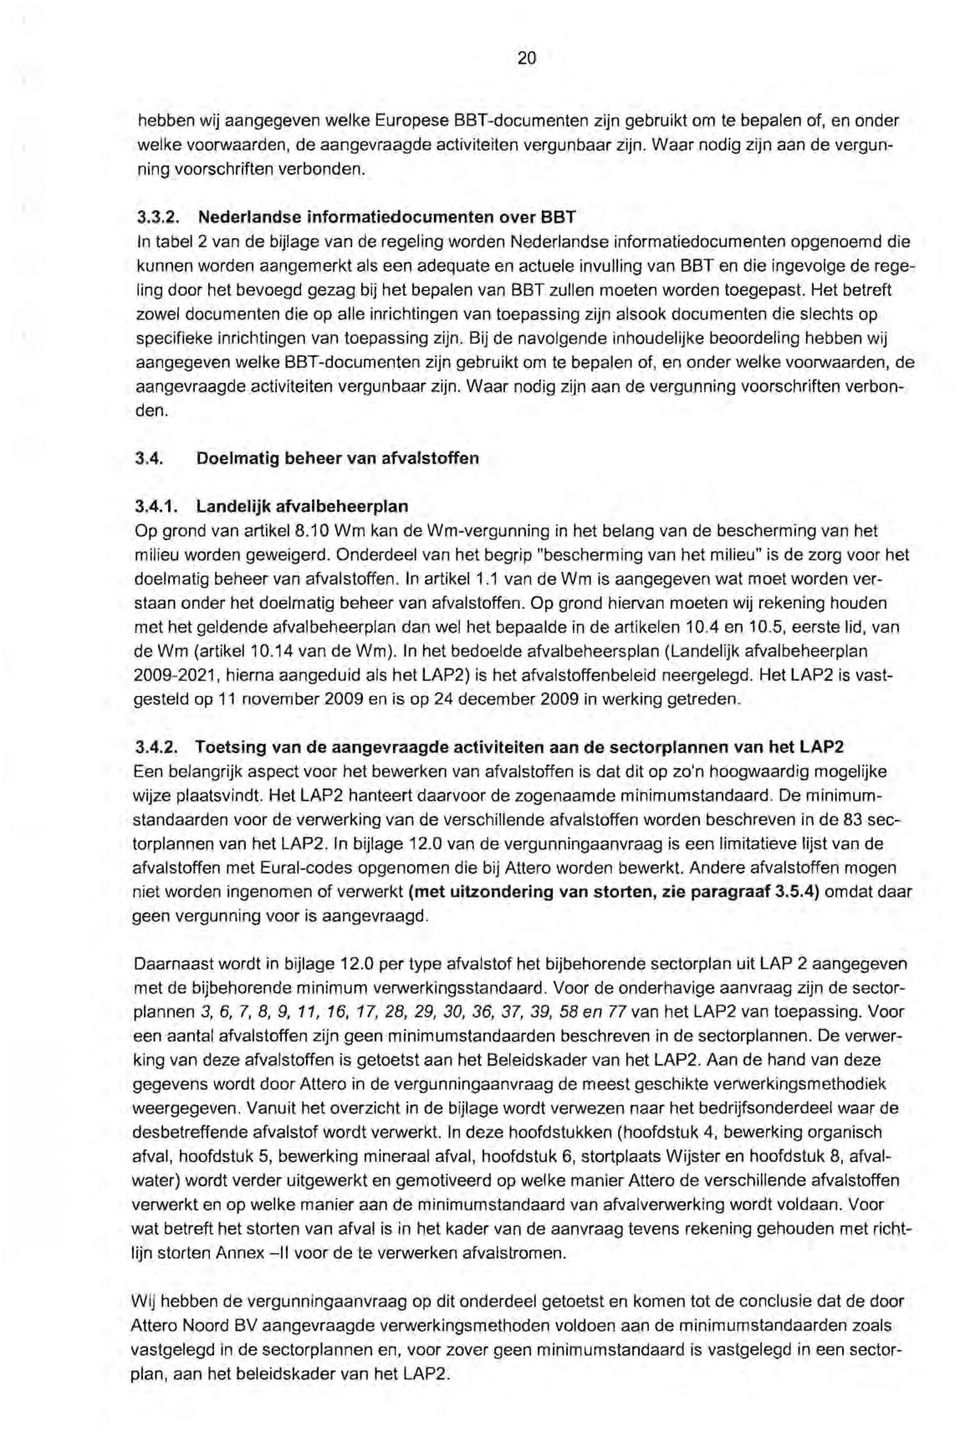 Nederlandse informatiedocumenten over BBT In tabel 2 van de bijlage van de regeling warden Nederlandse informatiedocumenten opgenoemd die kunnen warden aangemerkt als een adequate en actuele